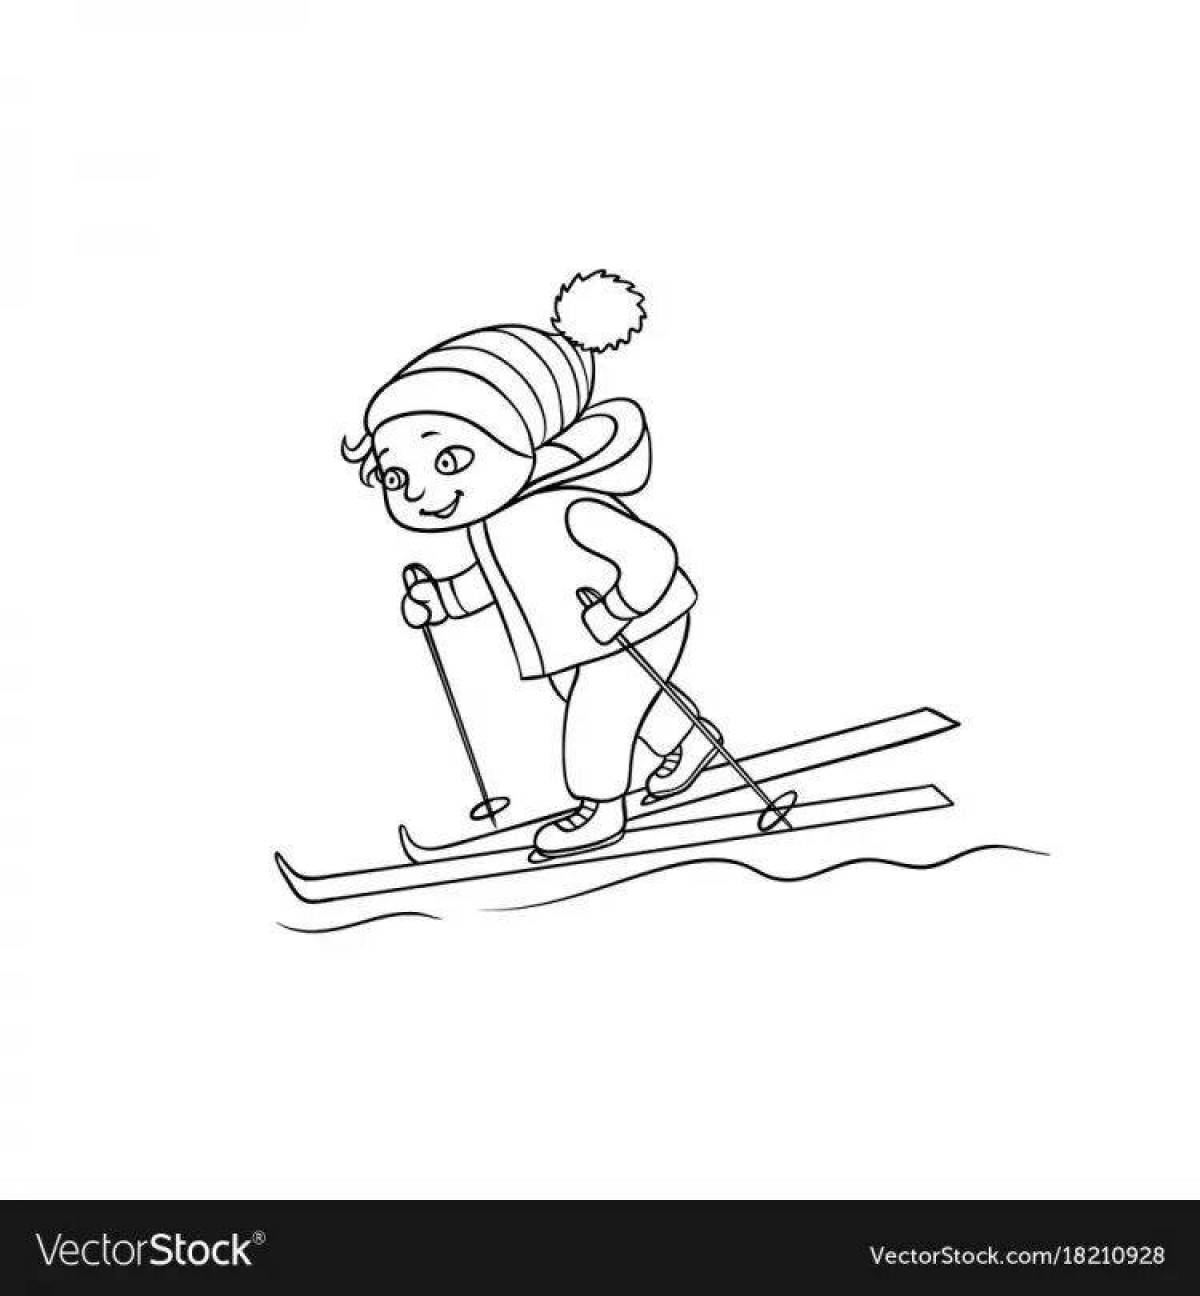 Фото Раскраска смелая девушка на лыжах